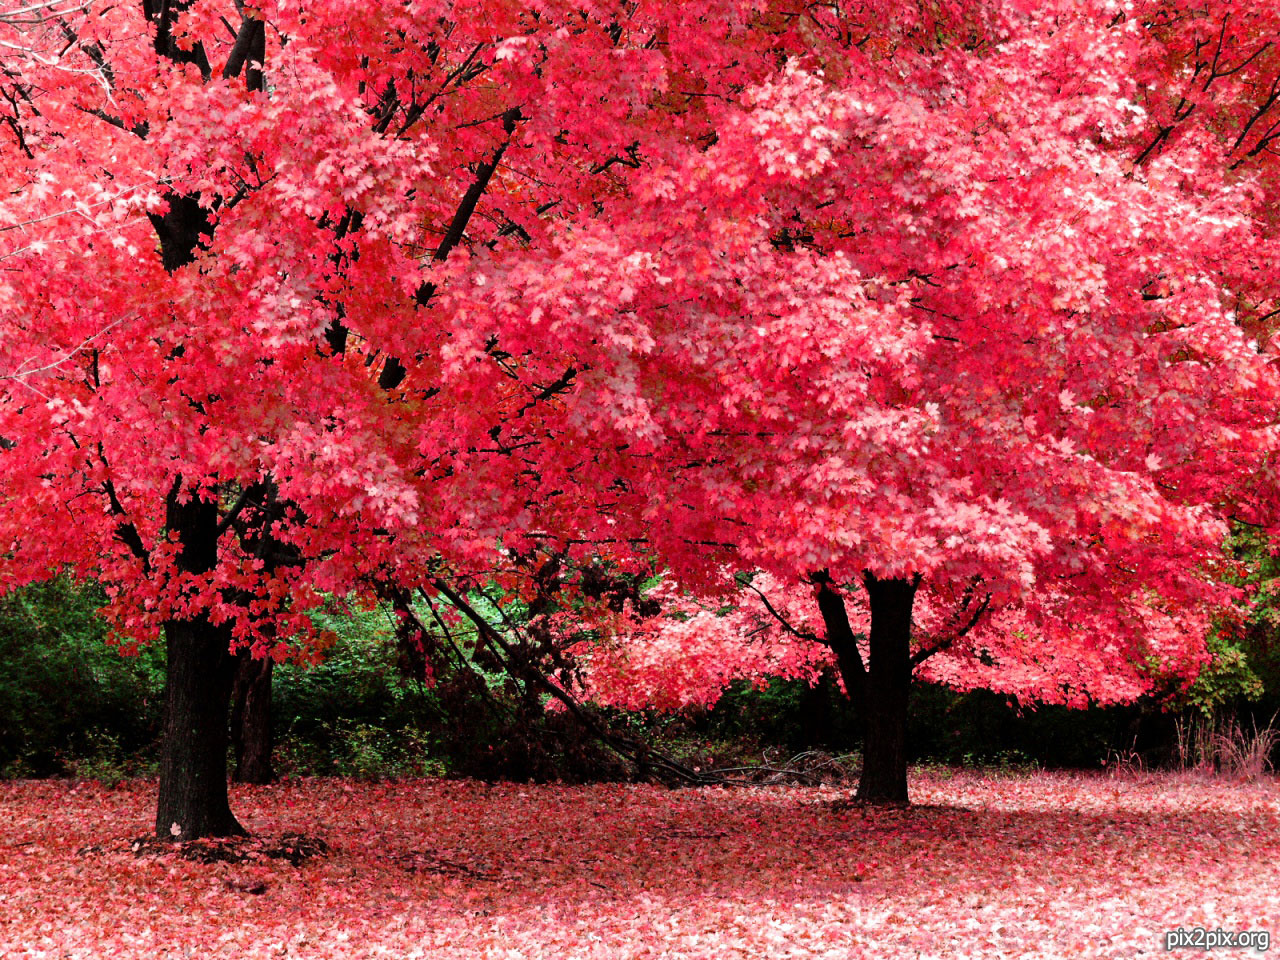 دانلود تصویر باکیفیت و زیبای درختان پاییزی